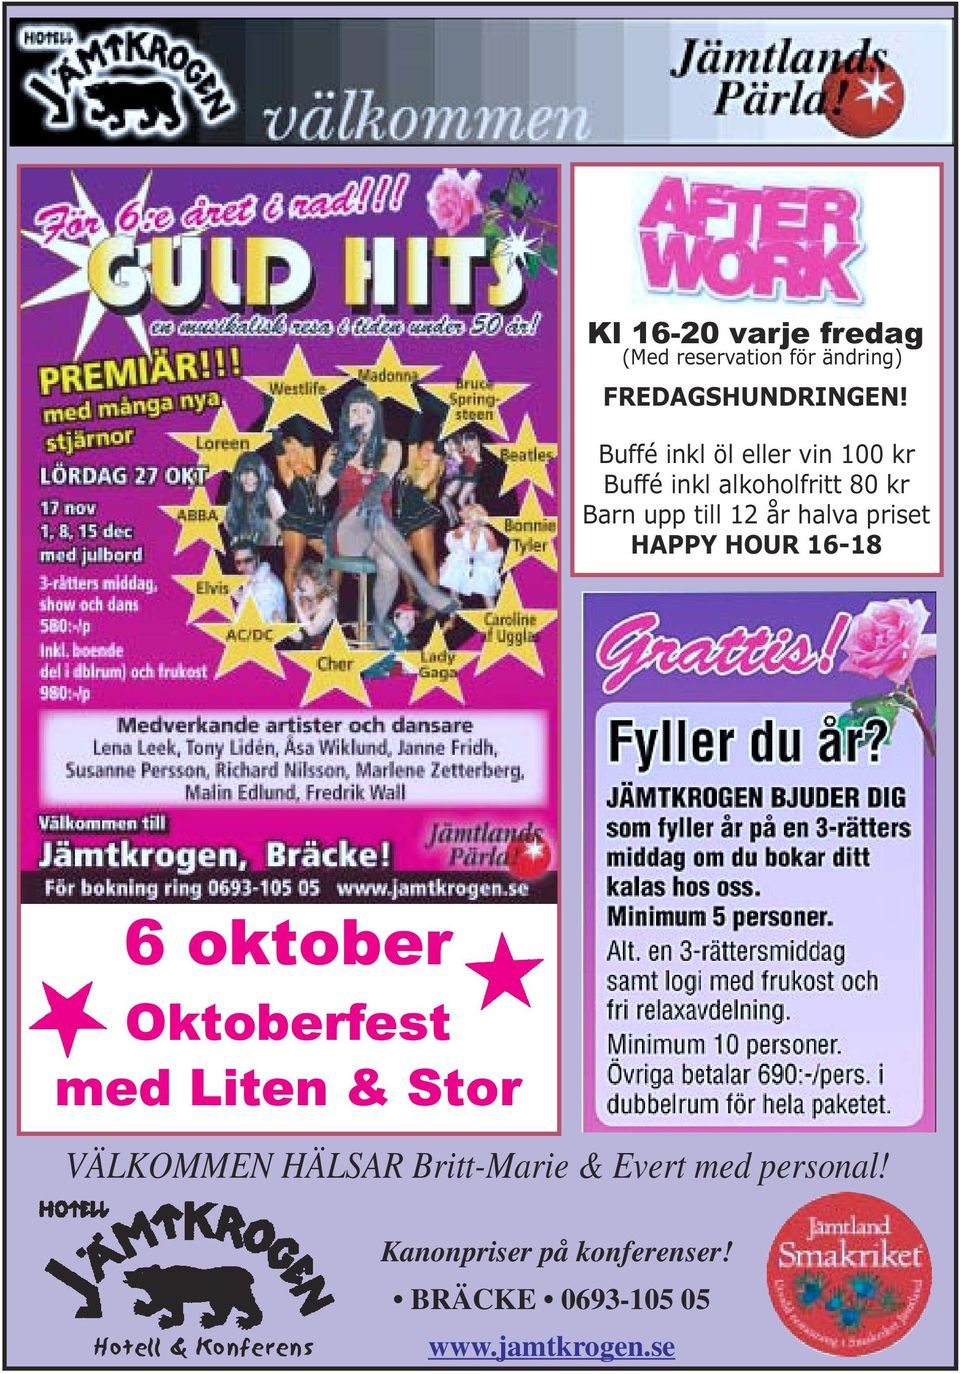 priset HAPPY HOUR 16-18 6 oktober Oktoberfest med Liten & Stor VÄLKOMMEN HÄLSAR